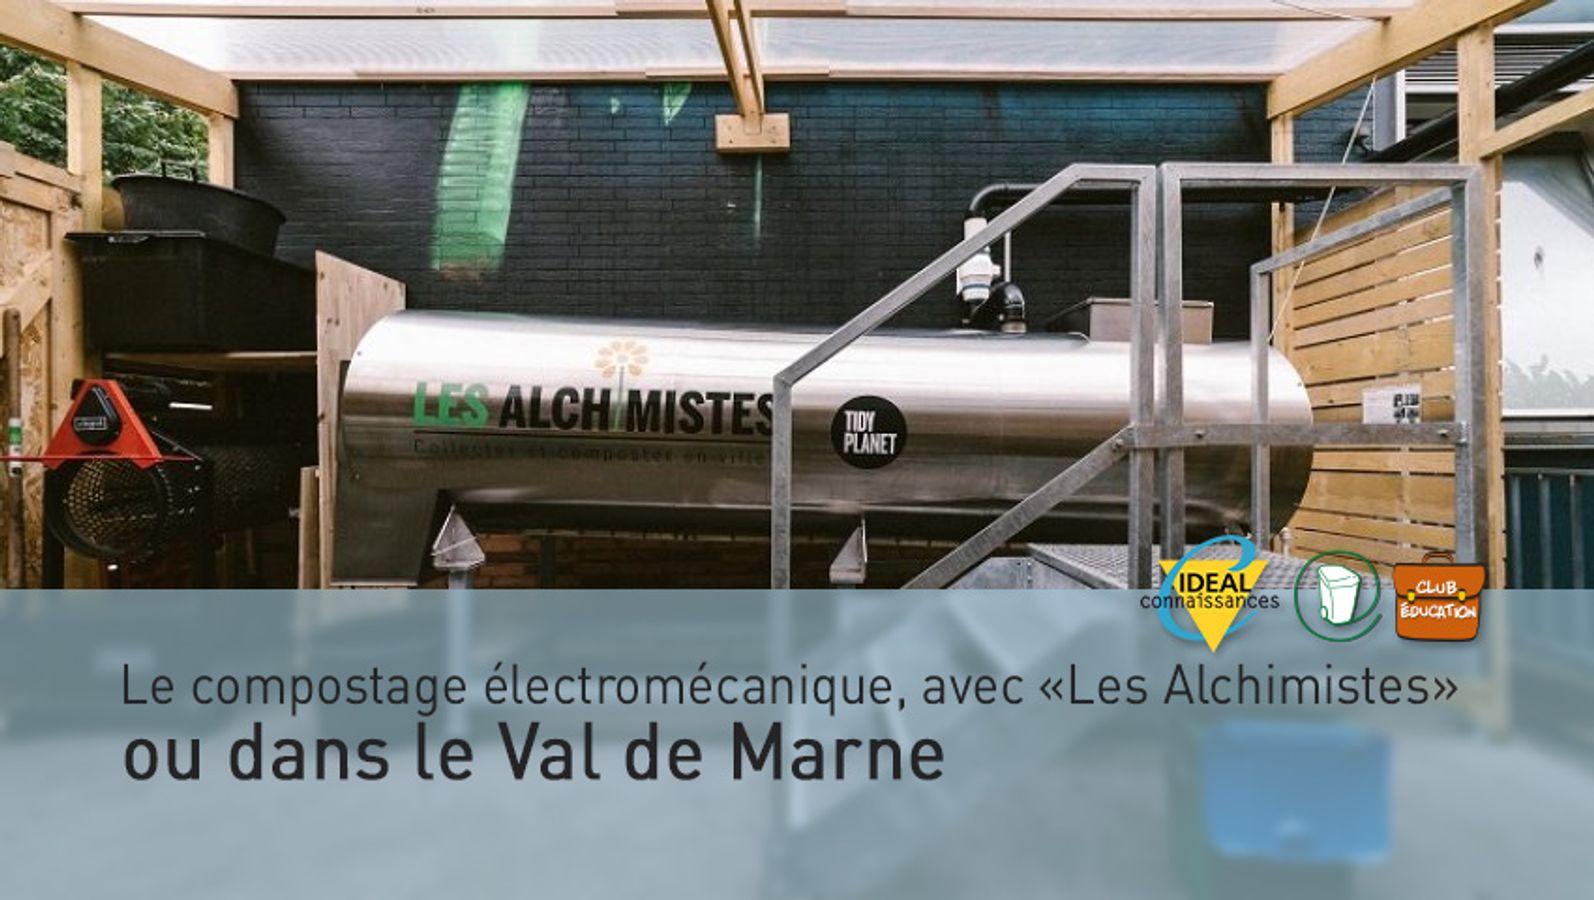 Le compostage électromécanique, avec «Les Alchimistes», ou dans le Val de Marne